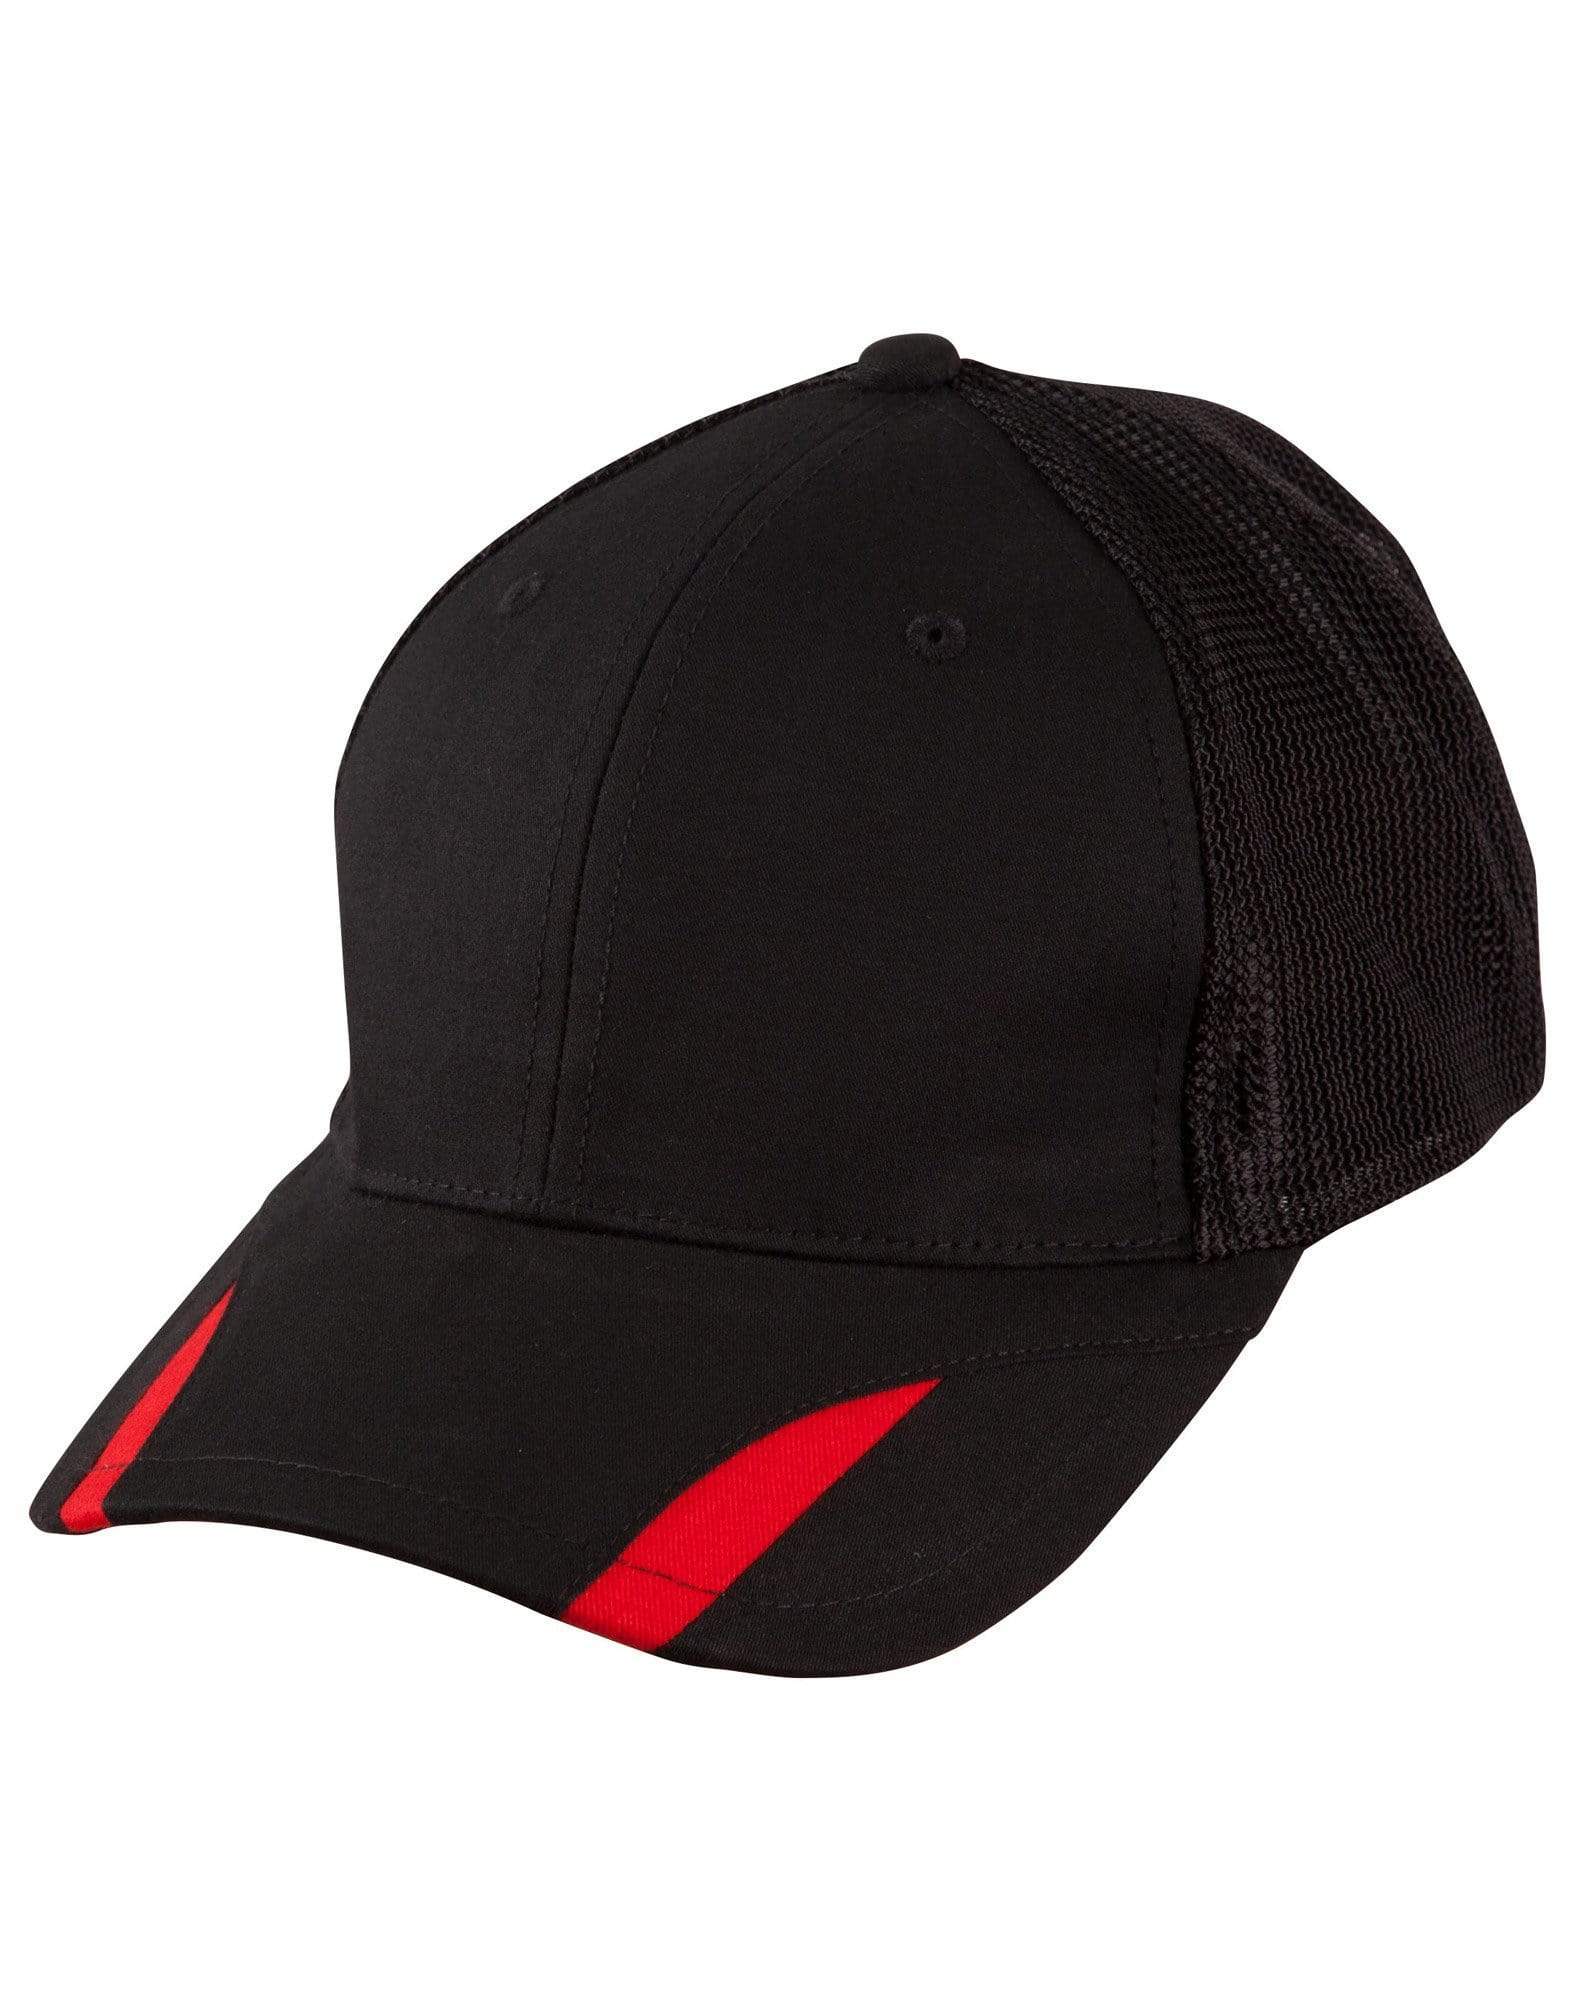 Contrast Peak Trim Cap Ch41 Active Wear Winning Spirit Black/Red One size 